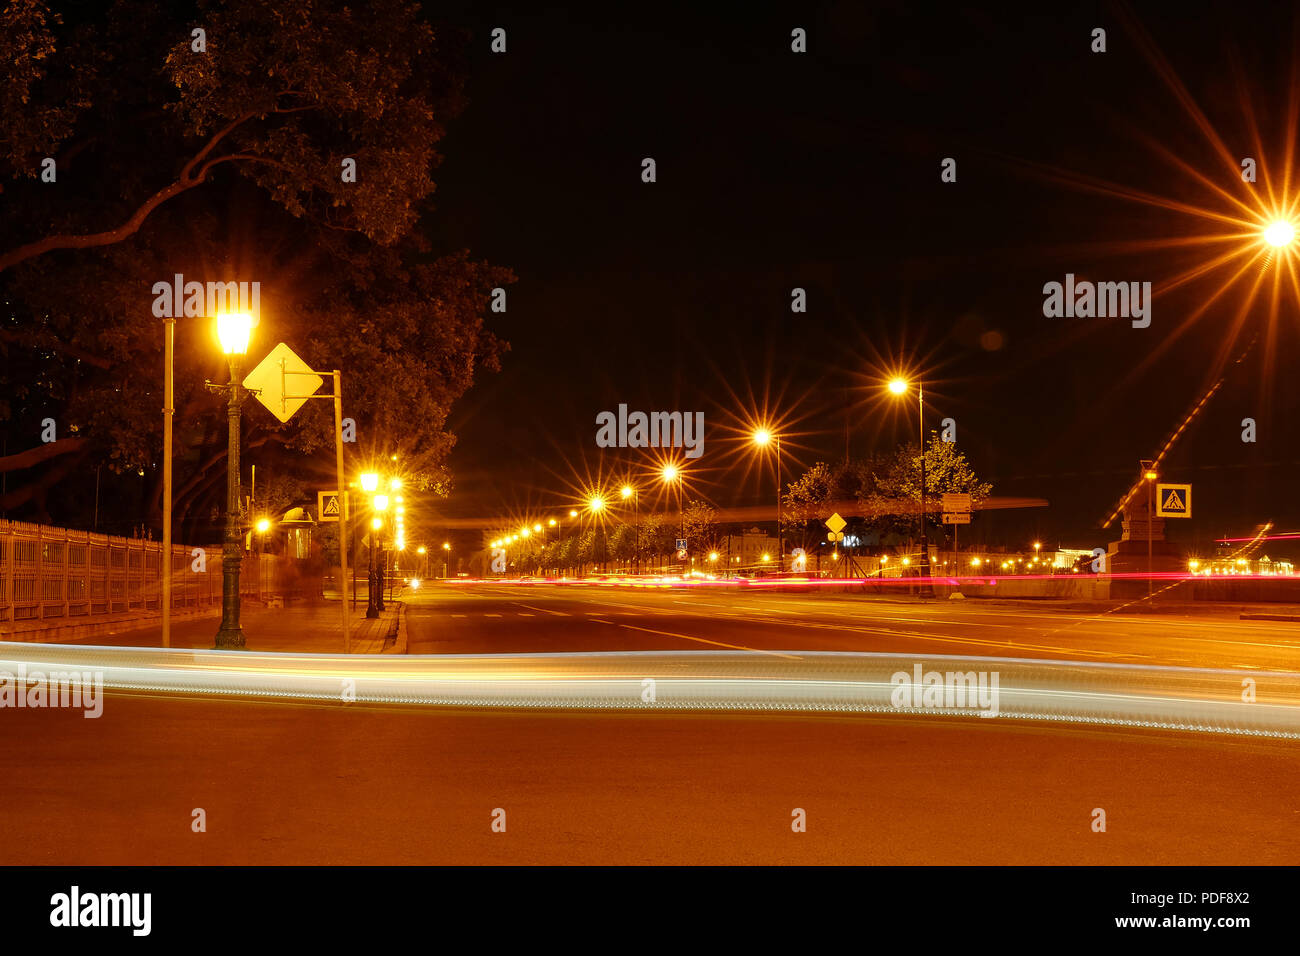 Ciudad de noche las luces de la calle, bokeh, el fondo, Las luces nocturnas de la ciudad de los rayos luminosos. de de los faros Fotografía de stock -